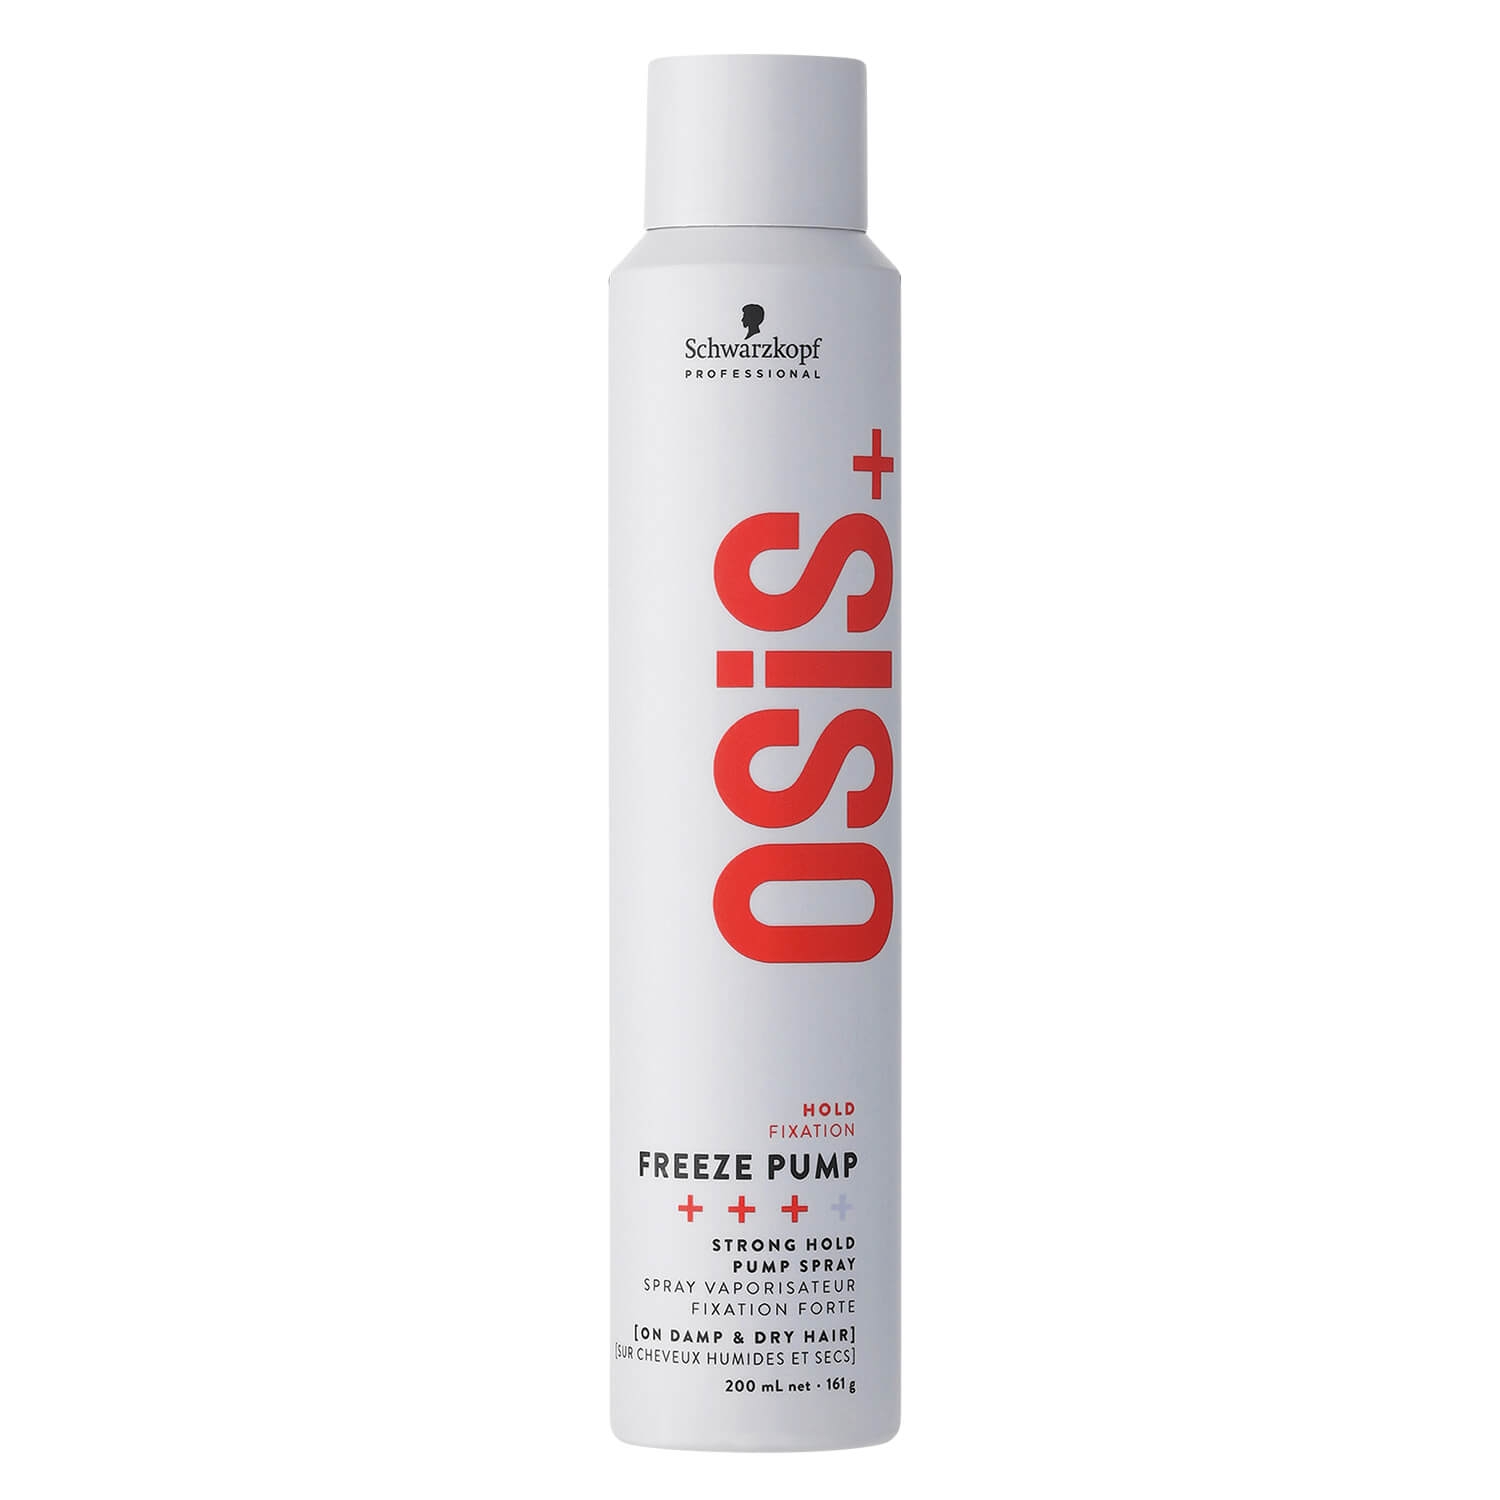 Produktbild von Osis - Freeze Pump Strong Hold Spray